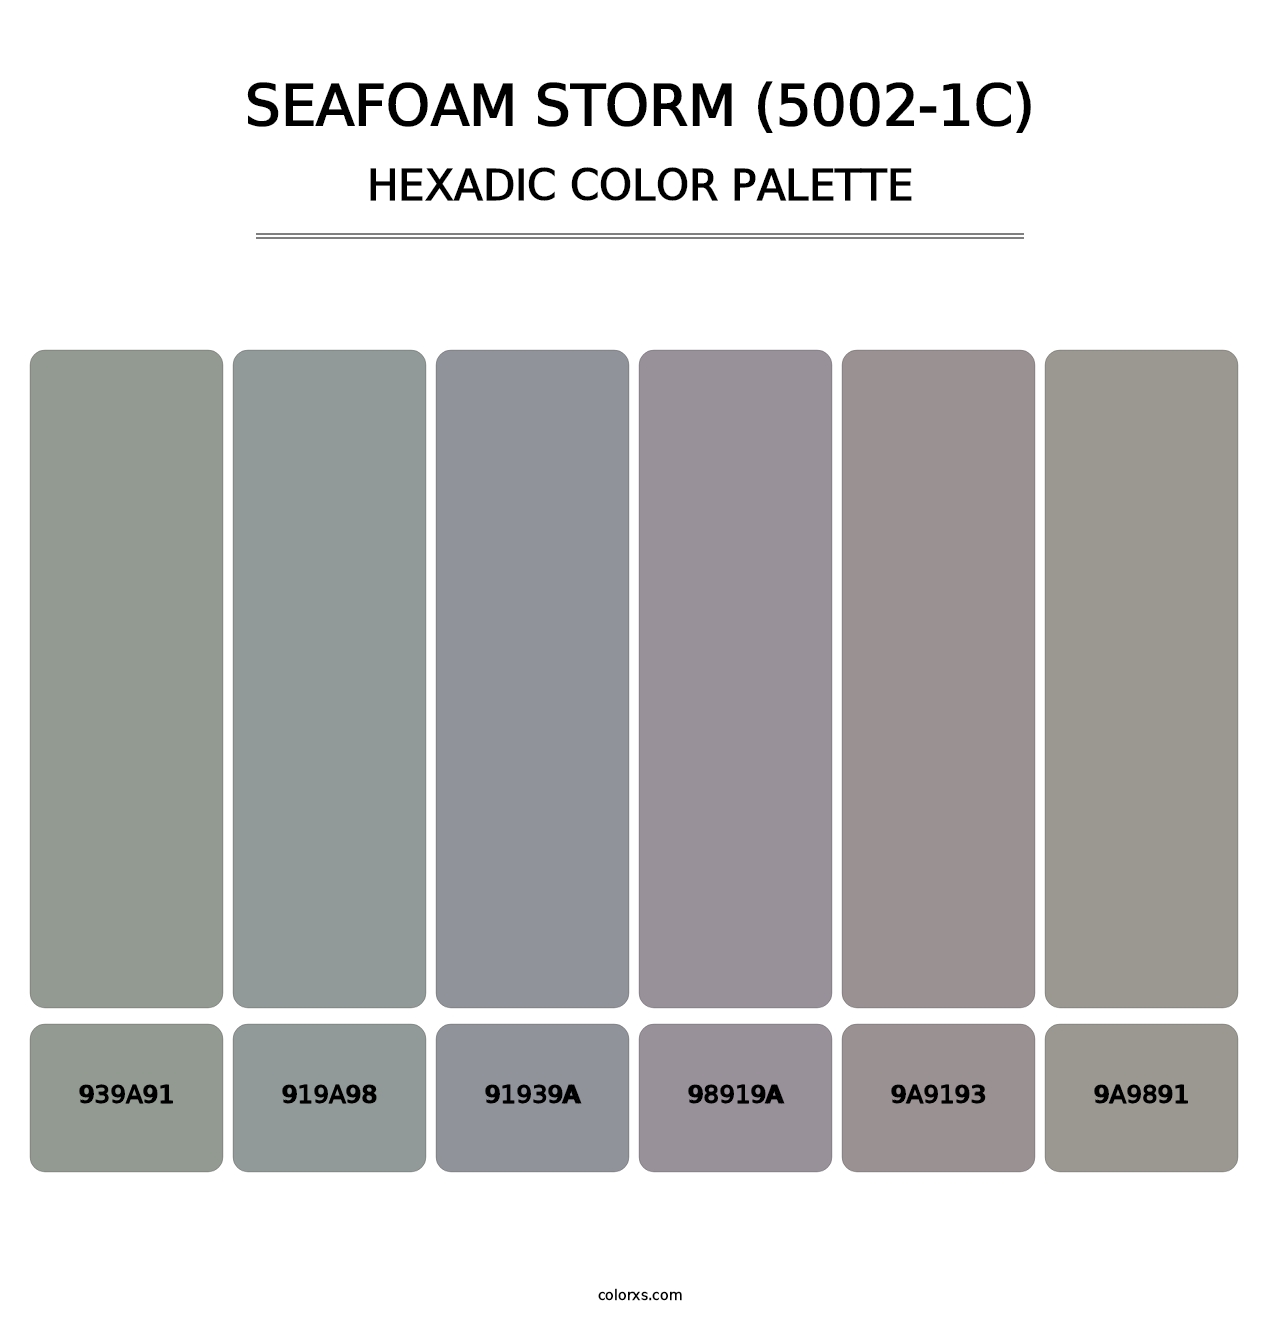 Seafoam Storm (5002-1C) - Hexadic Color Palette